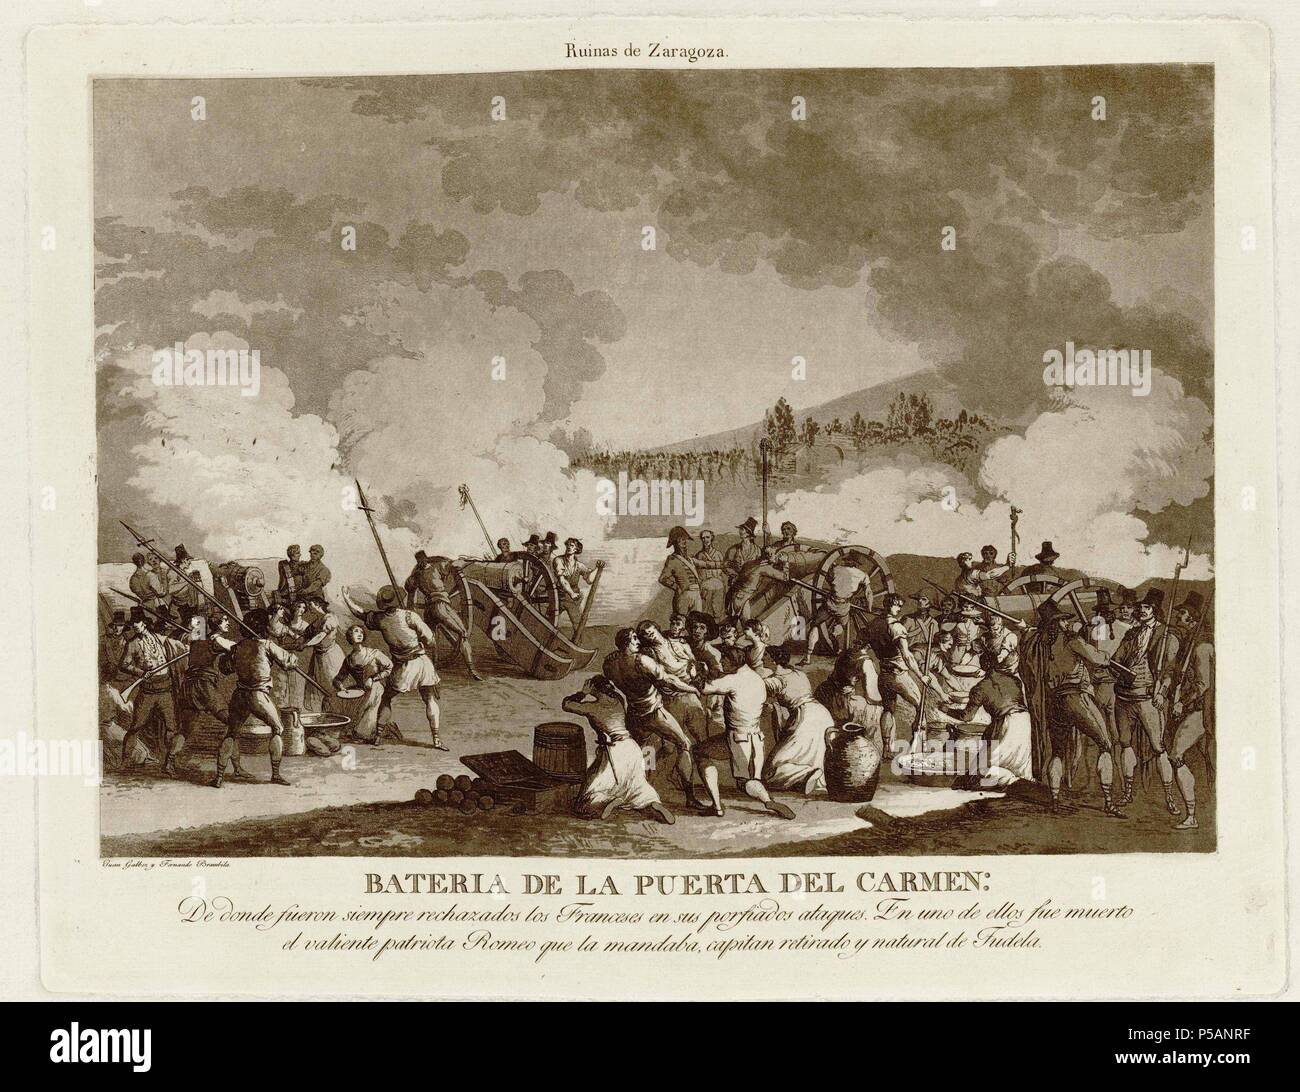 BATERIA DE LA PUERTA DEL CARMEN - 1812-1813 - GRABADO - AGUAFUERTE Y AGUATINTA. Author: BRAMBILA FERNANDO 1763/1834 Y GALVEZ JUAN. Location: BIBLIOTECA NACIONAL-COLECCION, MADRID, SPAIN. Stock Photo